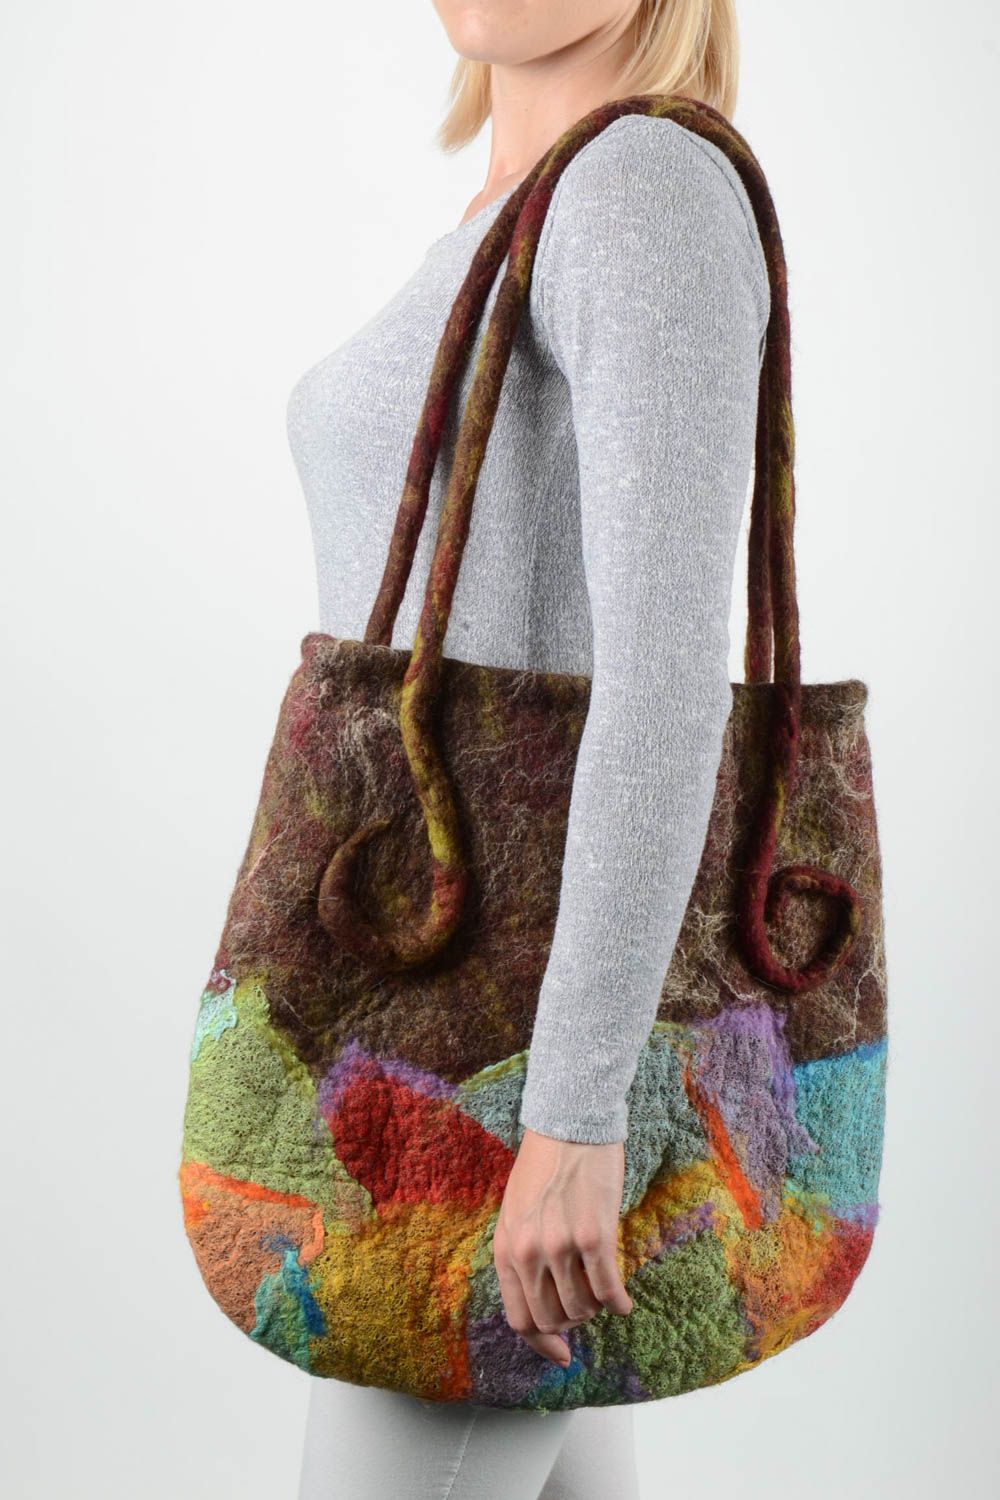 Сумка ручной работы сумка из шерсти красивая сумка подарок женщине разноцветная фото 1